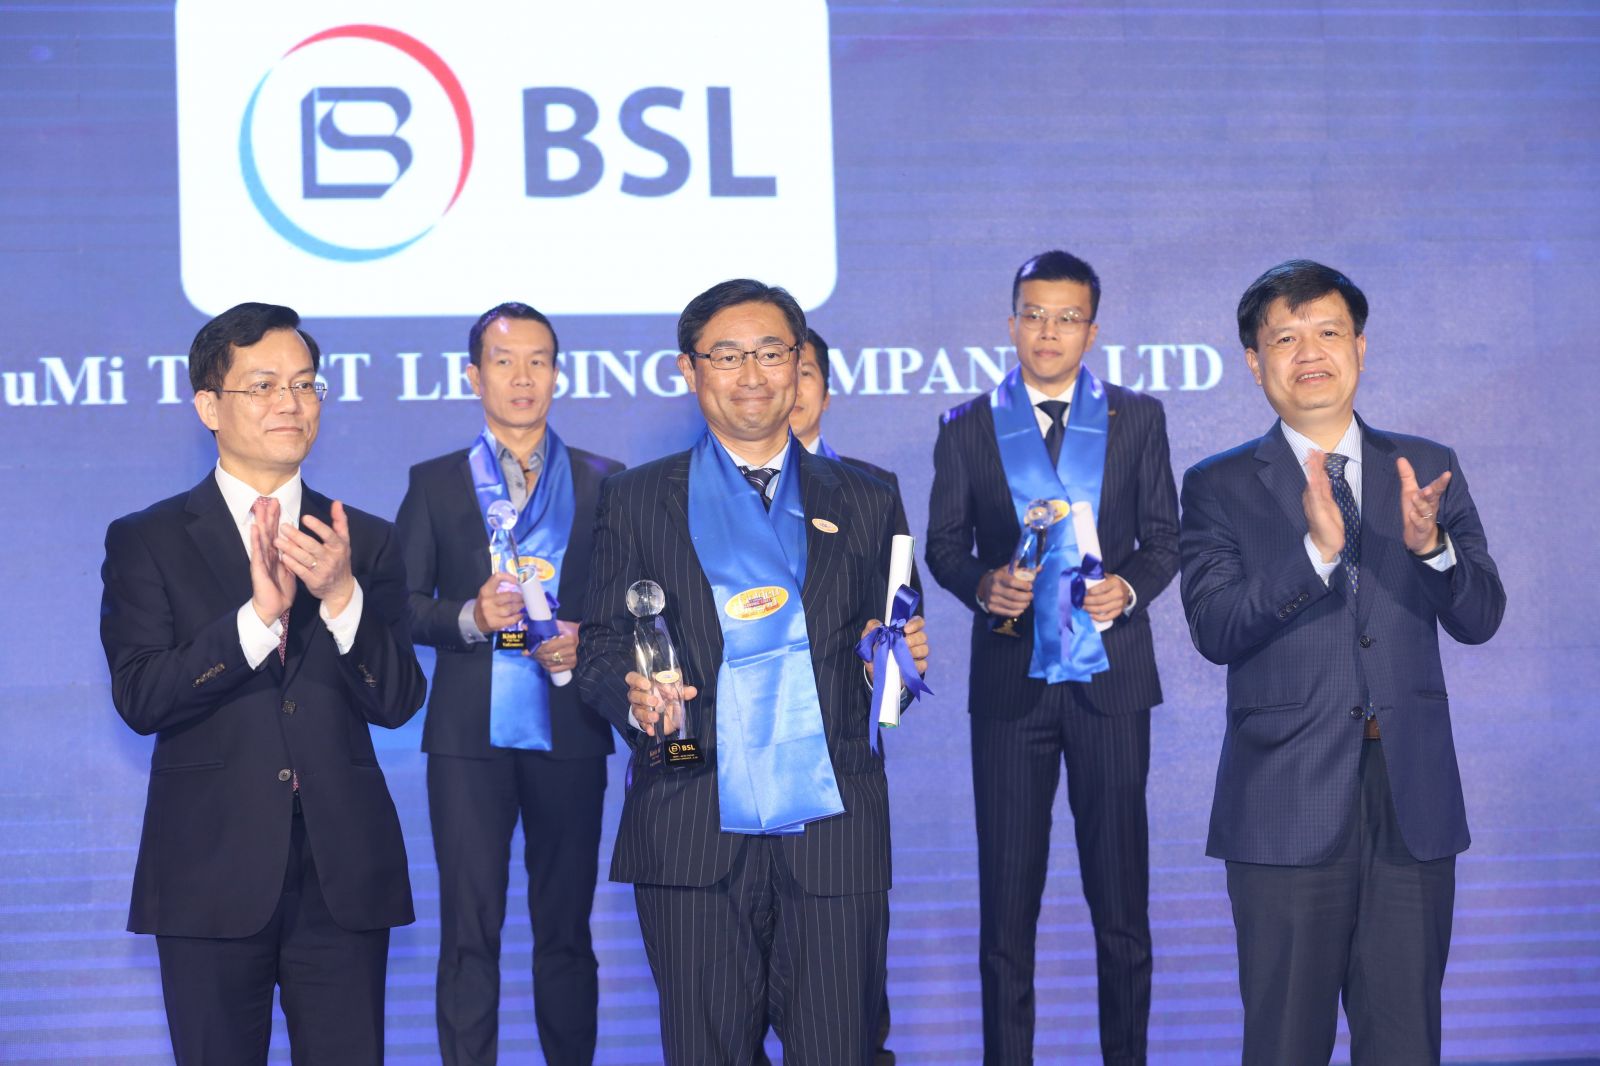 Đại diện BSL nhận Giải thưởng “Nhà cung cấp Dịch vụ Tài chính tin cậy” tại Rồng Vàng 2022